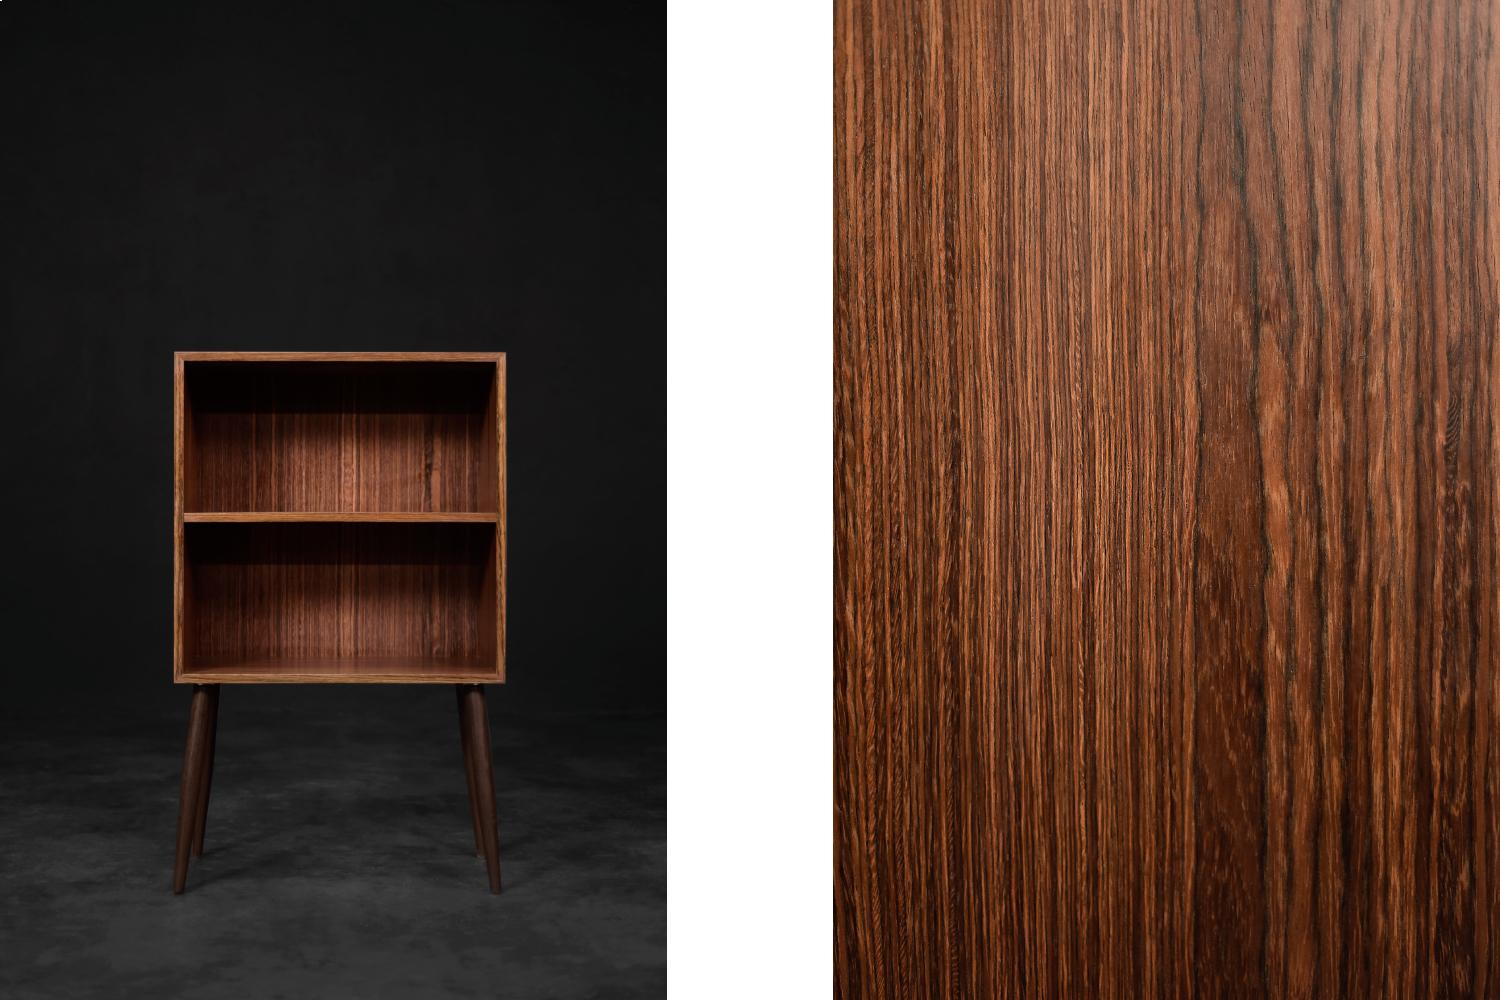 Ce meuble classique a été fabriqué au Danemark dans les années 1960. Il est fini en palissandre brun foncé avec un grain visible. L'armoire comporte deux étagères. Les pieds hauts et fins sont fabriqués en bois massif teinté en brun. L'armoire est